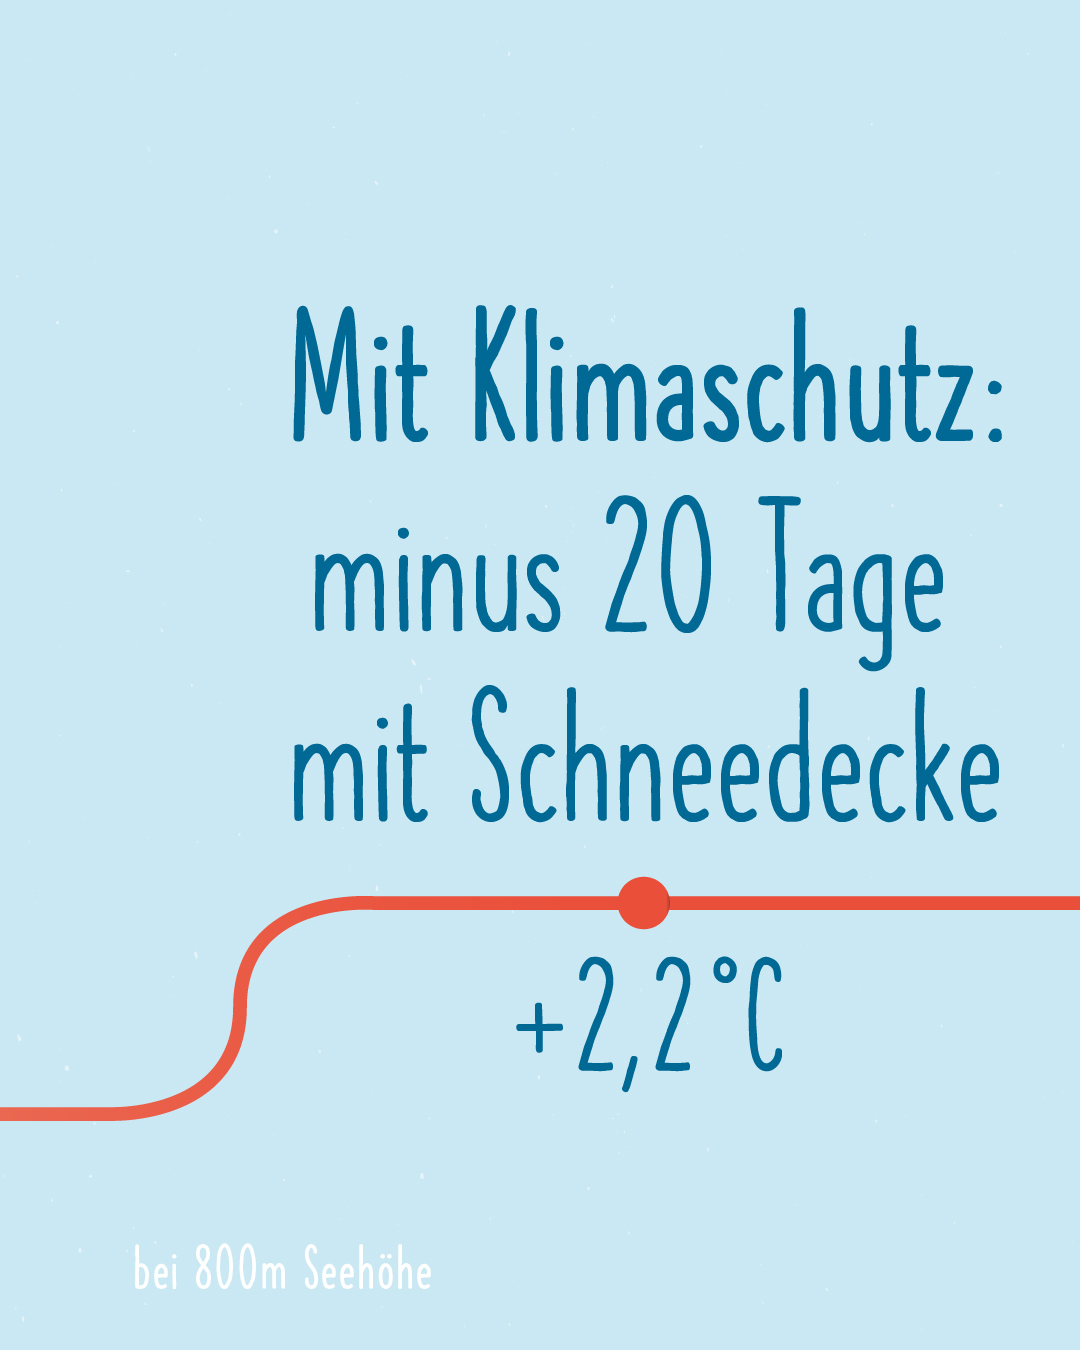 Mit Klimaschutz: minus 20 Tage mit Schneedecke. Unten im Bild läuft die rote Linie weiter nach oben und zeigt +2°